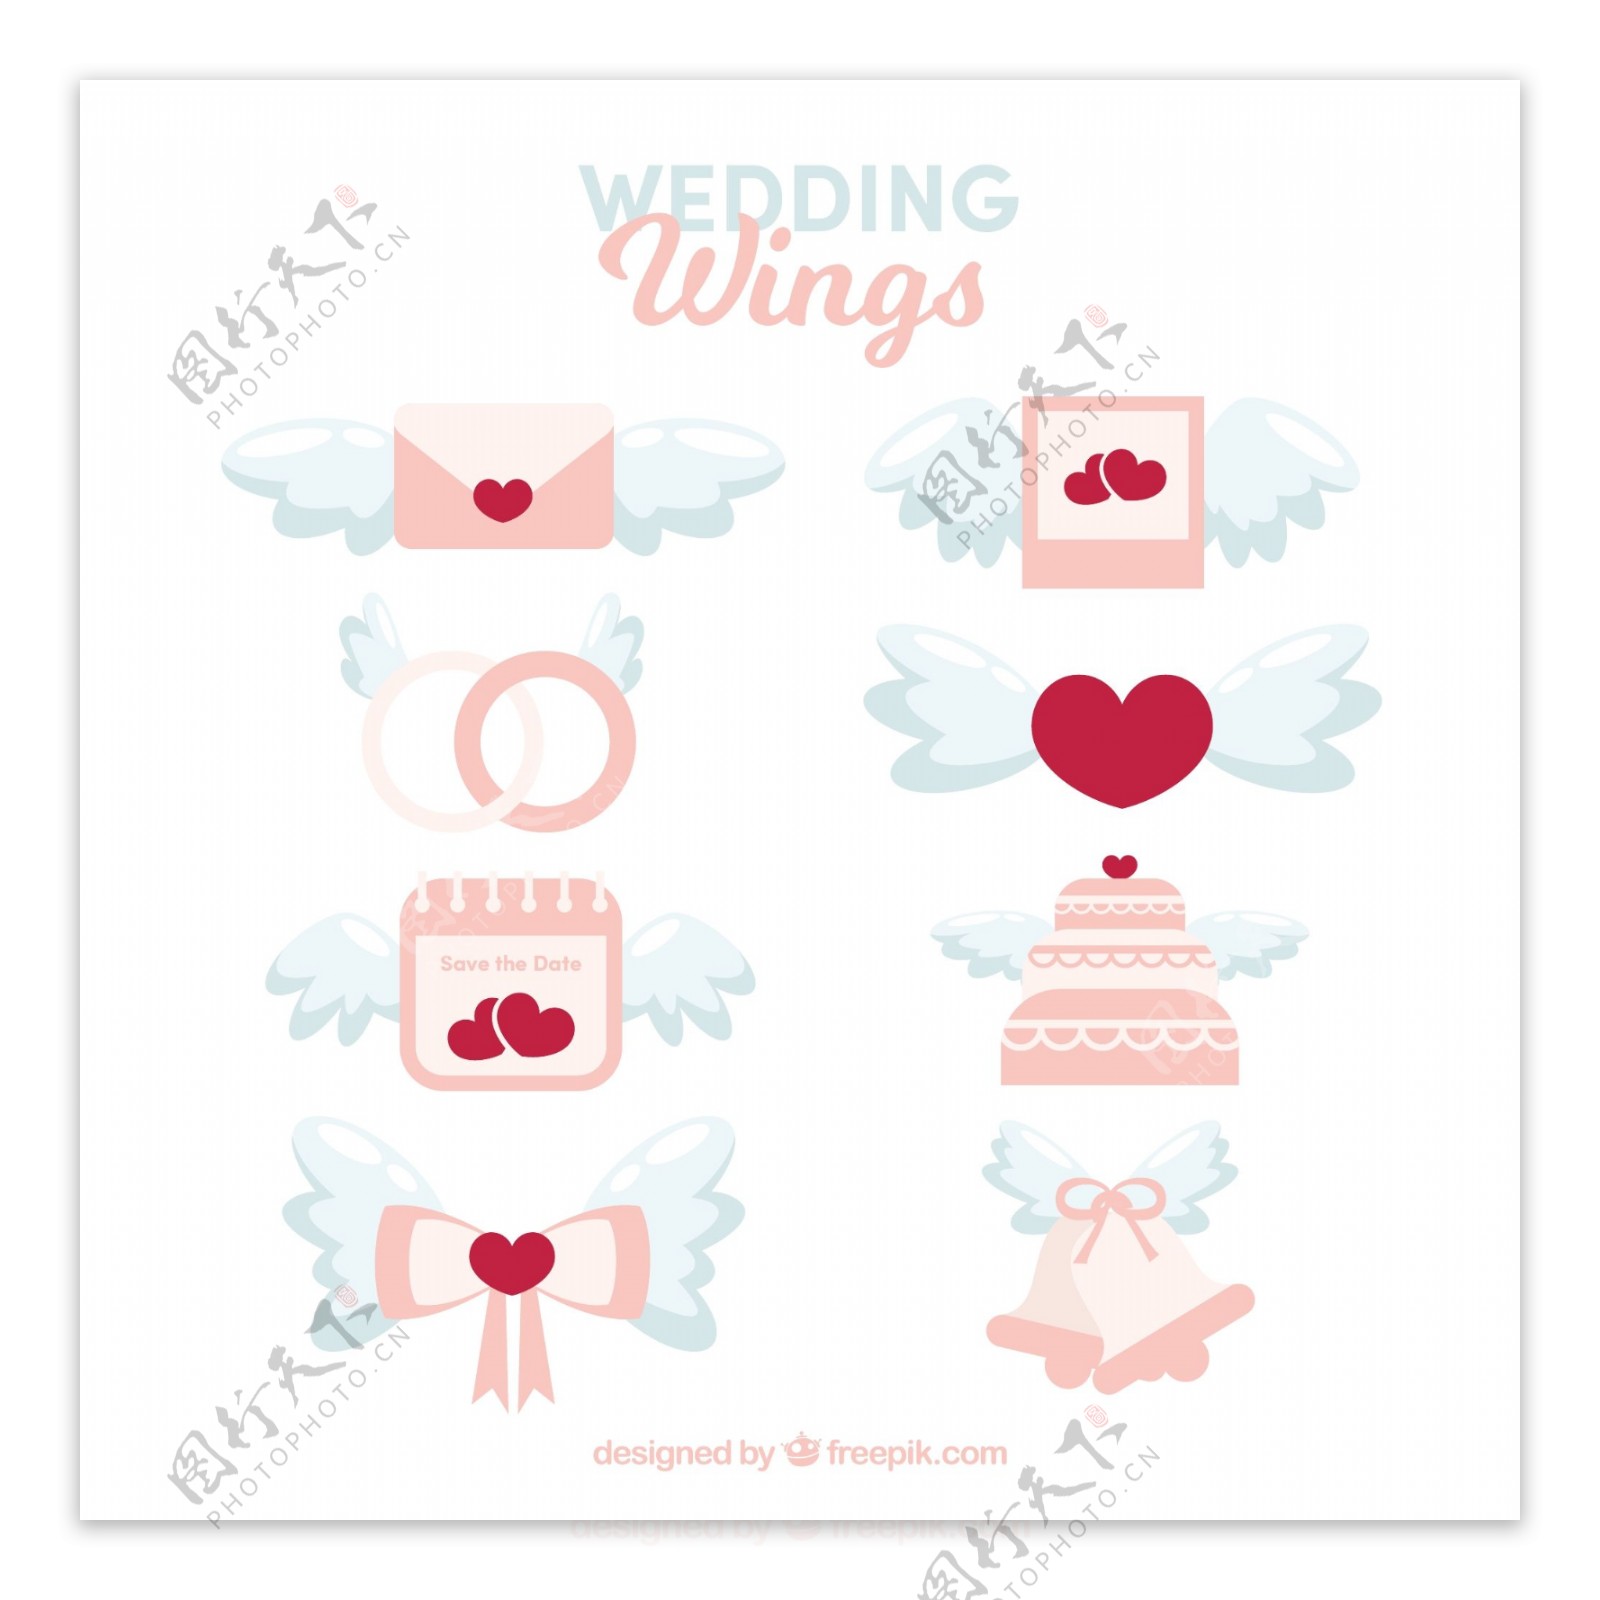 手绘婚礼元素与翅膀图标